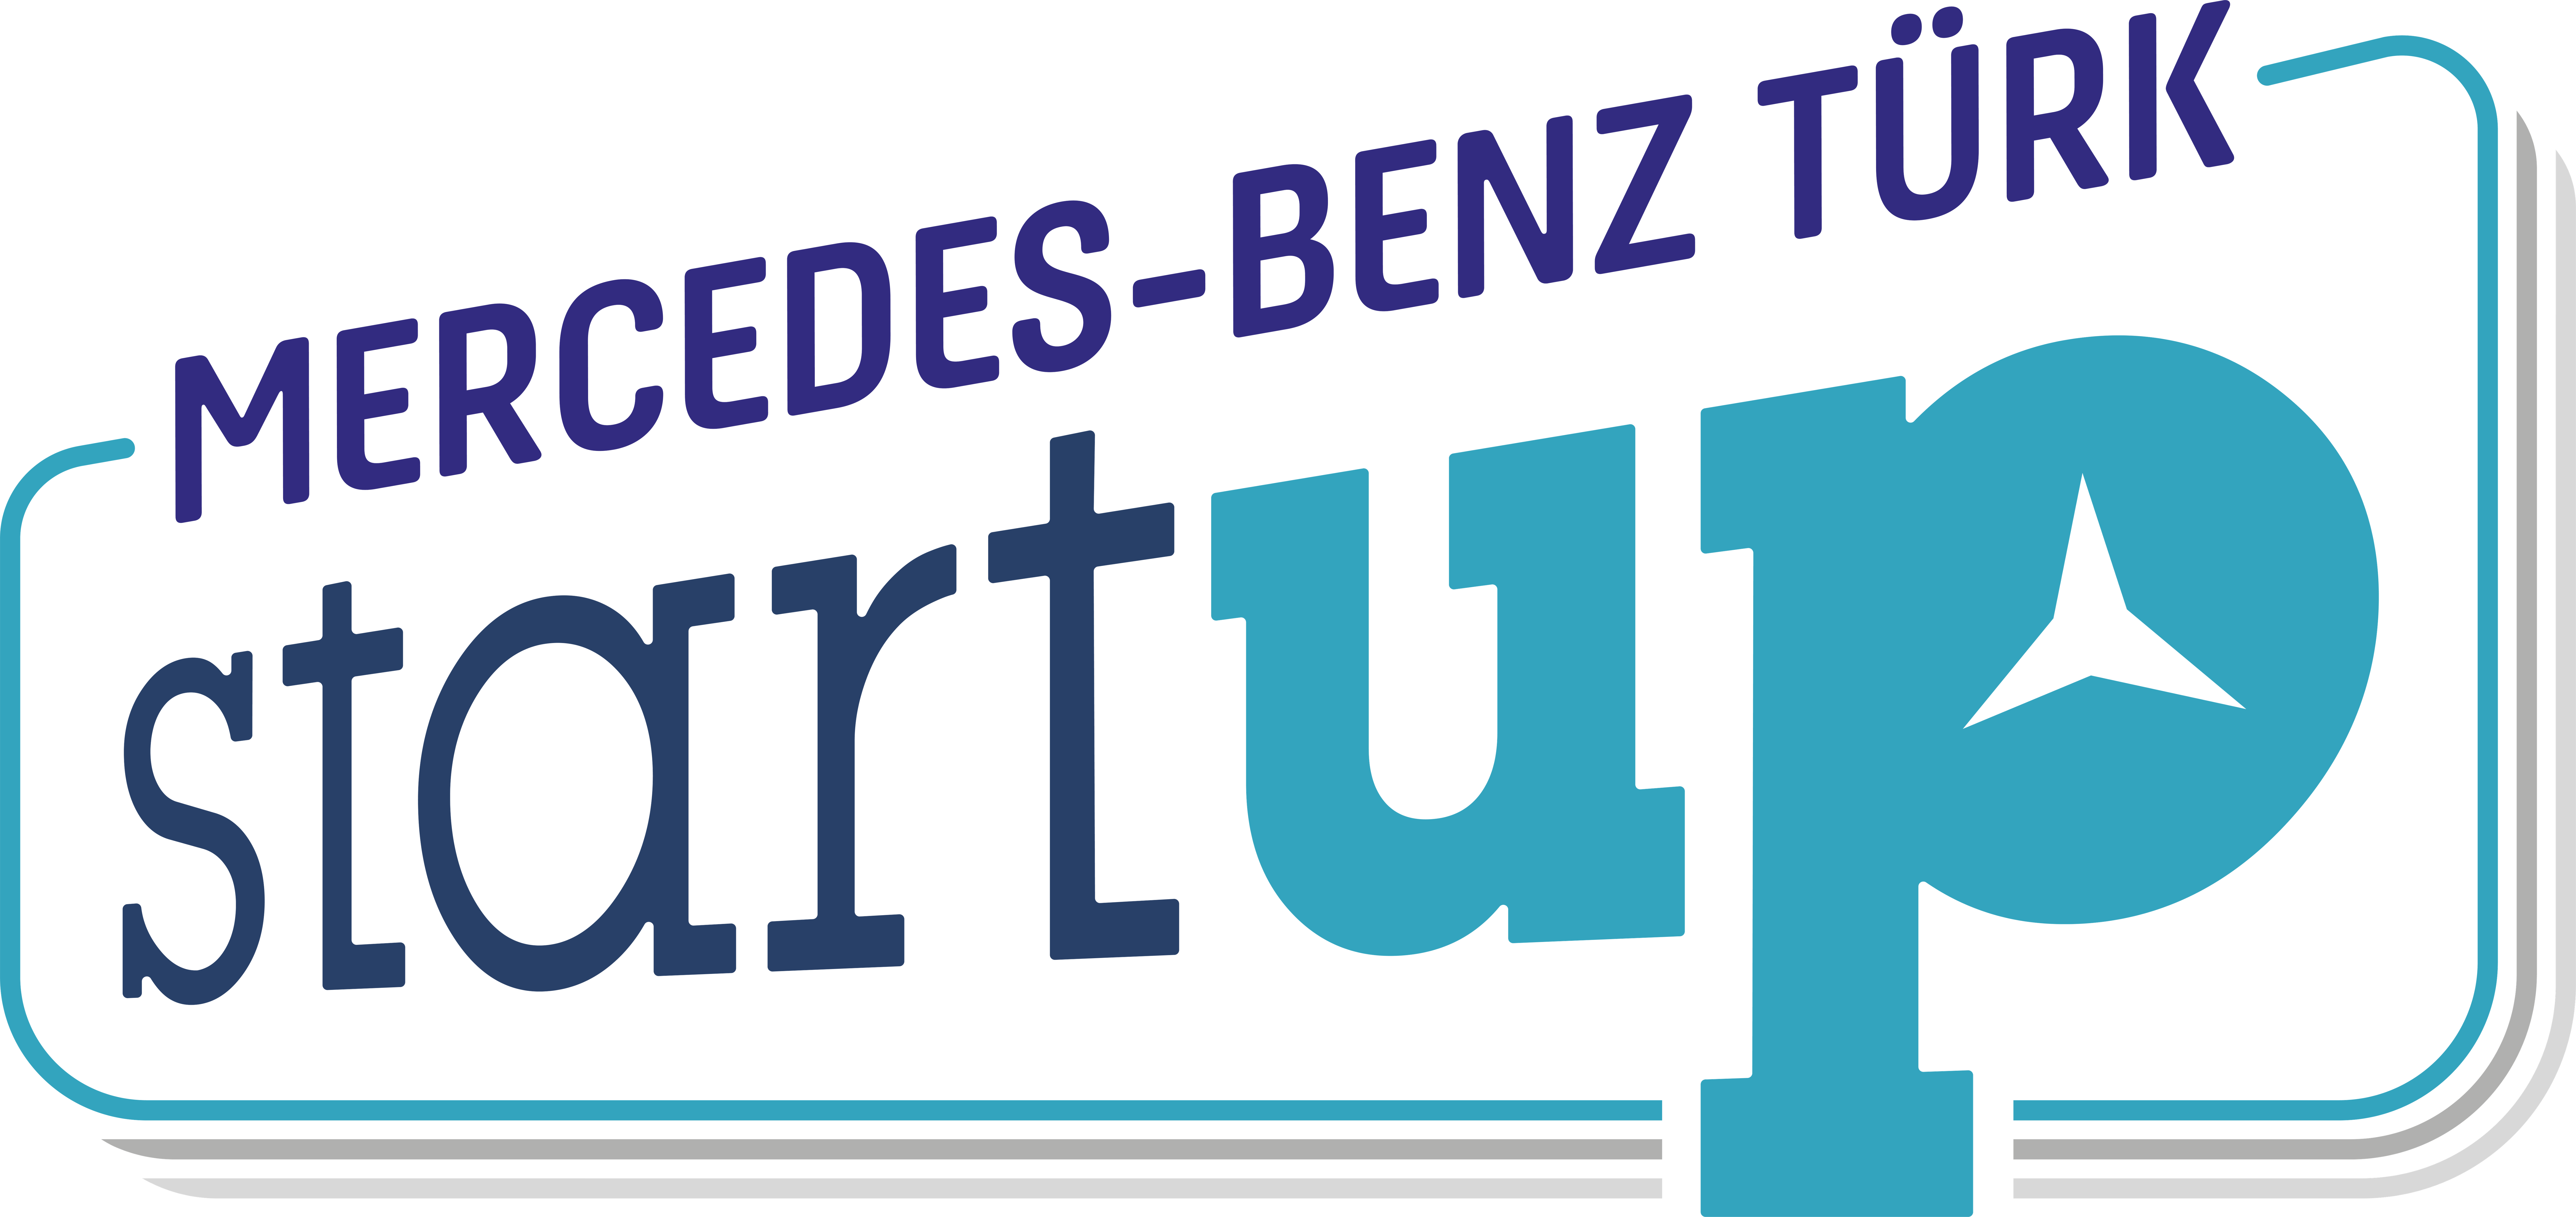 Mercedes-Benz Türk StartUP 2019 yarışması başladı  2